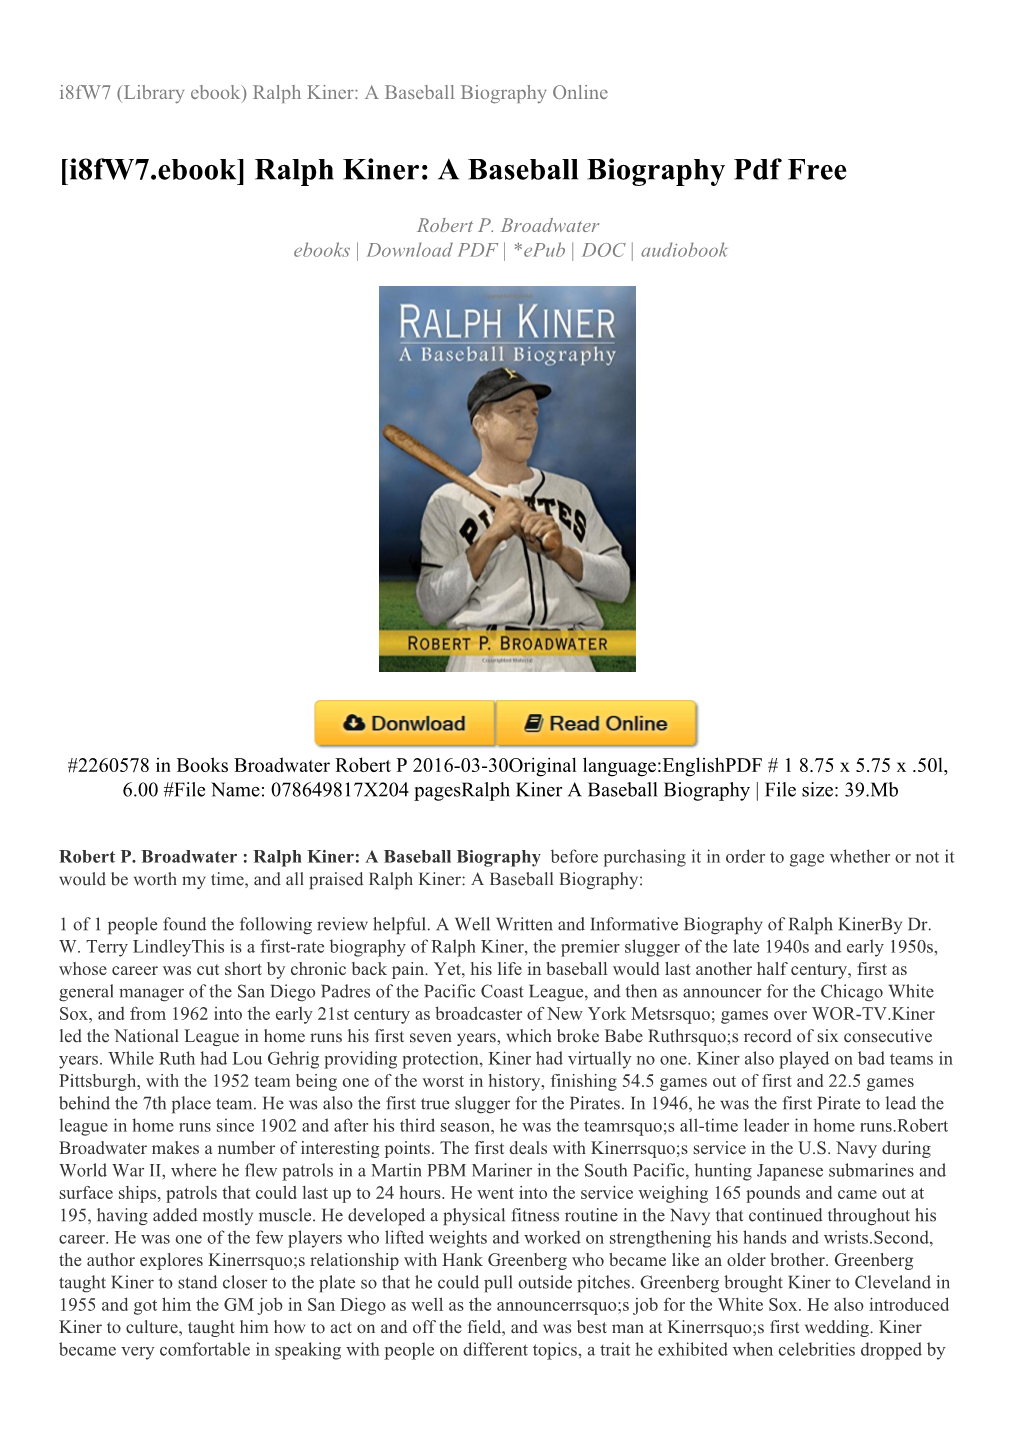 Ralph Kiner: a Baseball Biography Online